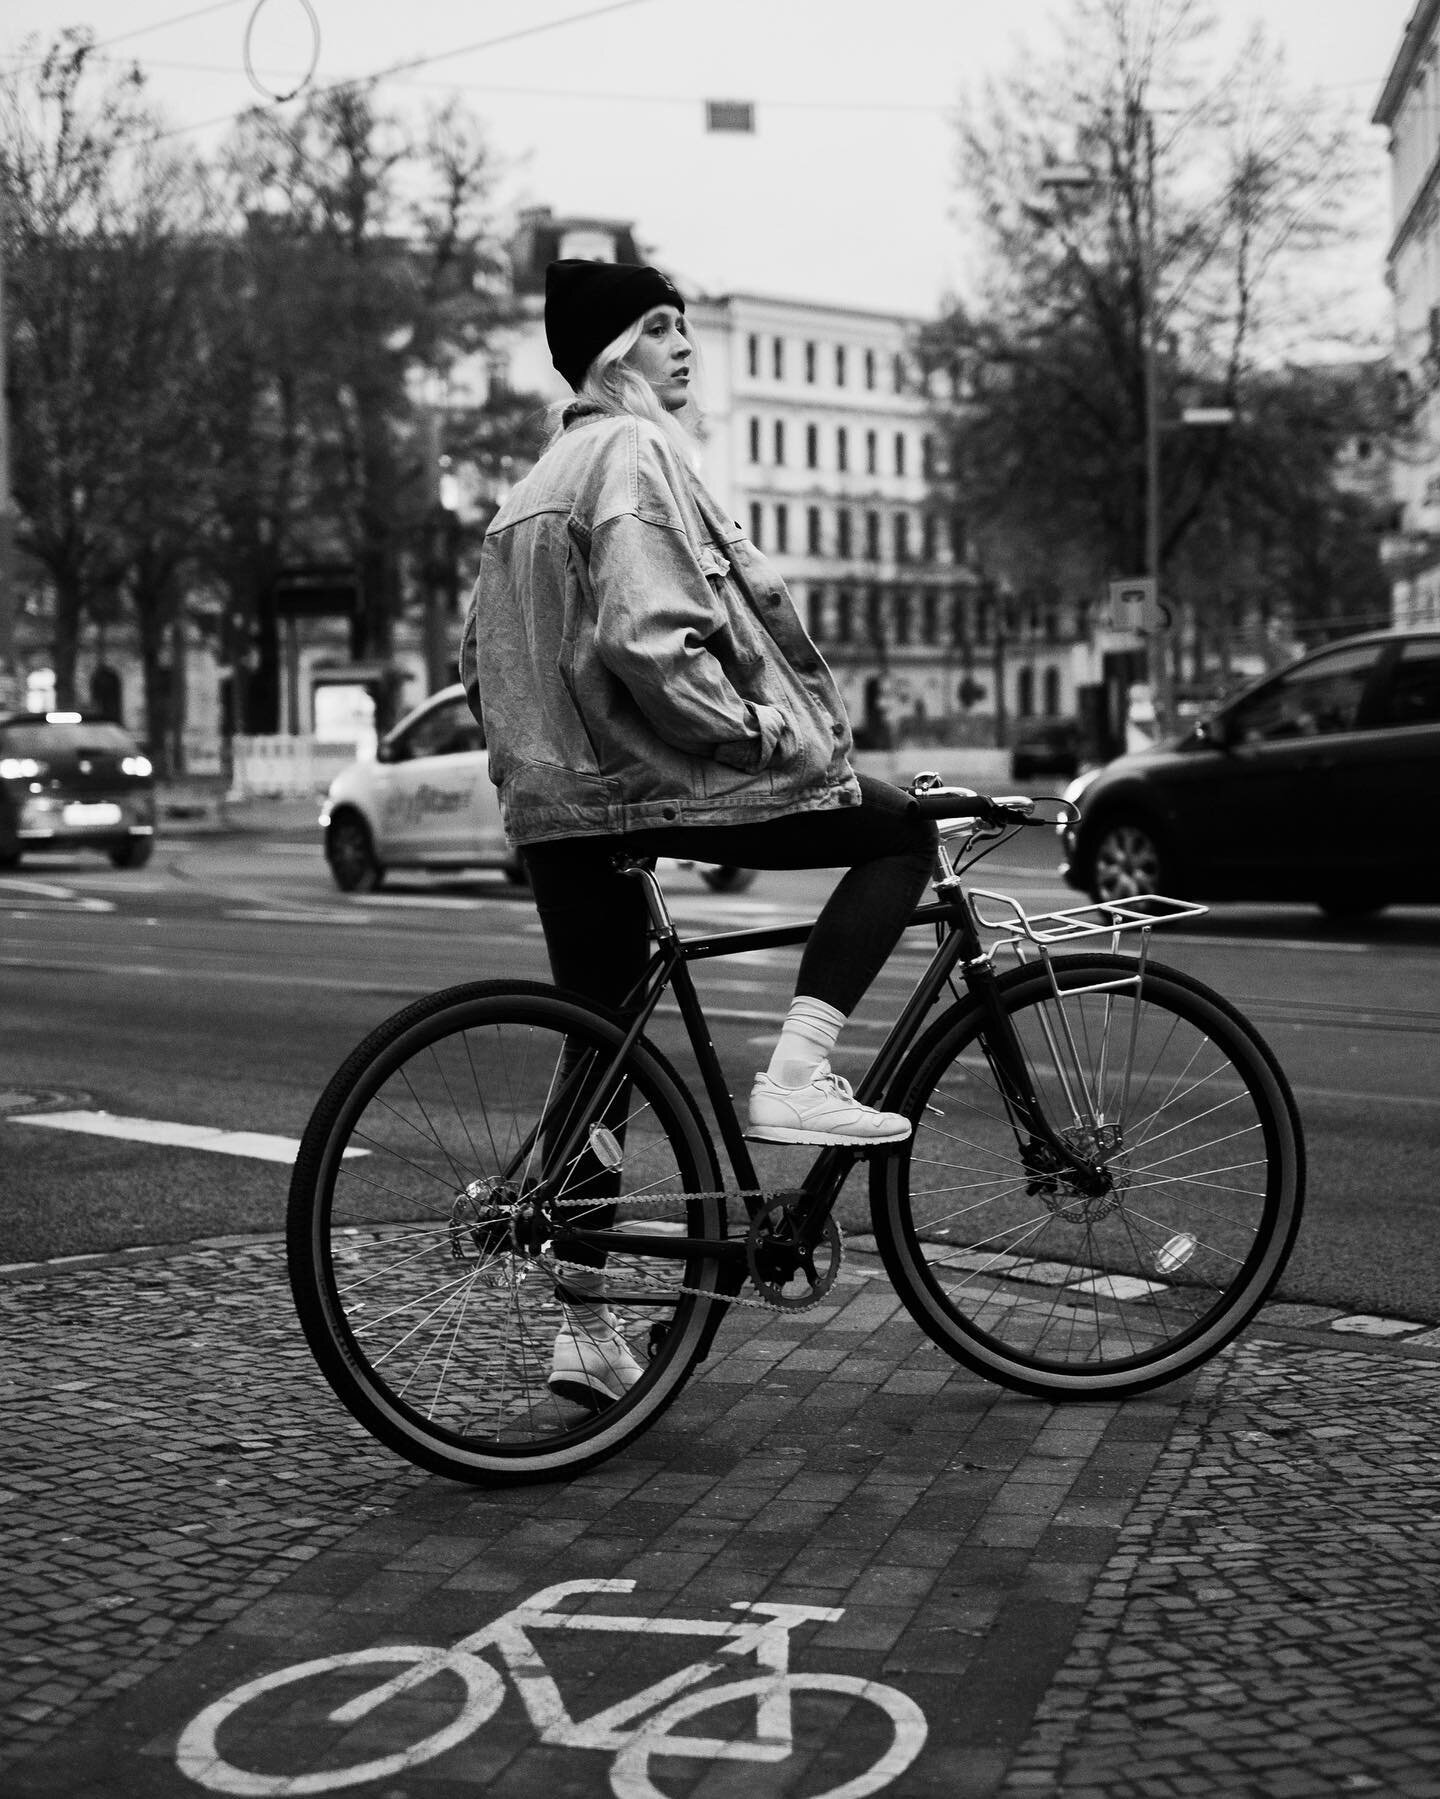 &ldquo;In meinem Chemnitzer Freundeskreis sind einige Rennradfahrer*innen unterwegs, ich selbst hatte bisher eher ein Fahrrad, um mobil zu sein. Chemnitz ist eine recht kleine Stadt, f&uuml;r die das Fahrrad einfach sehr praktisch ist. Ein Freund von